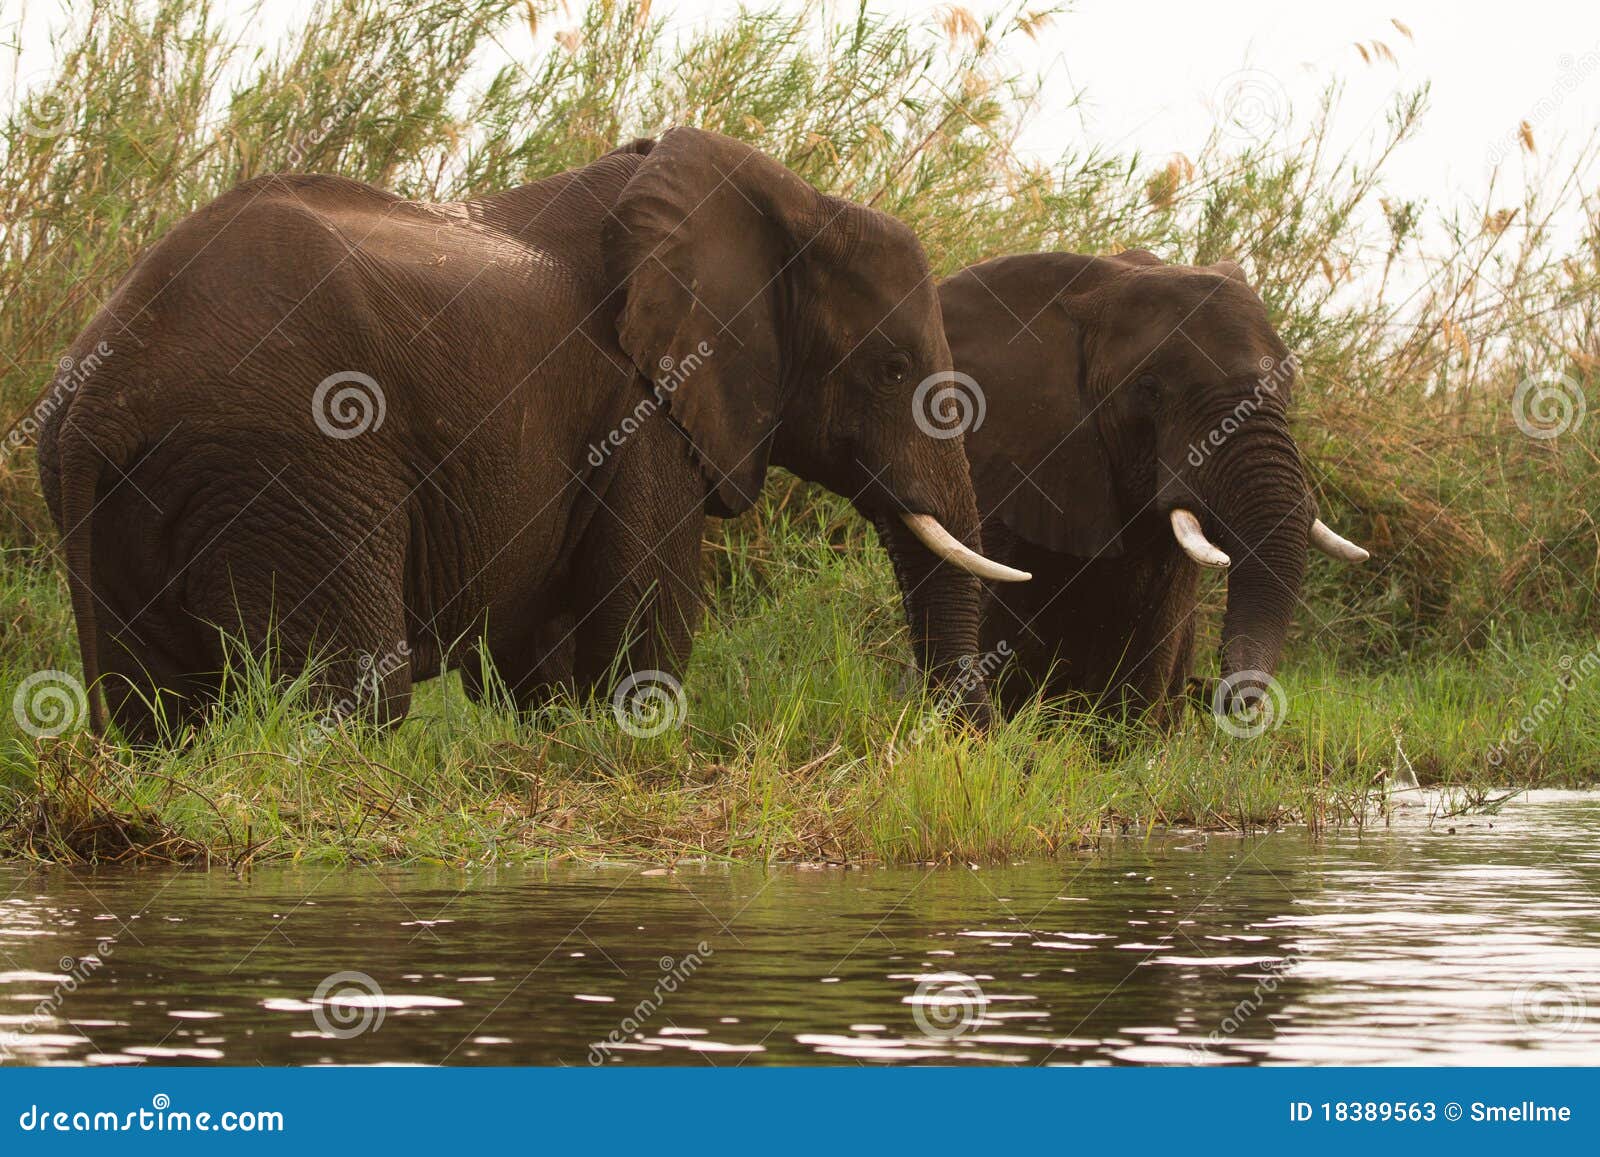 safari lower zambezi